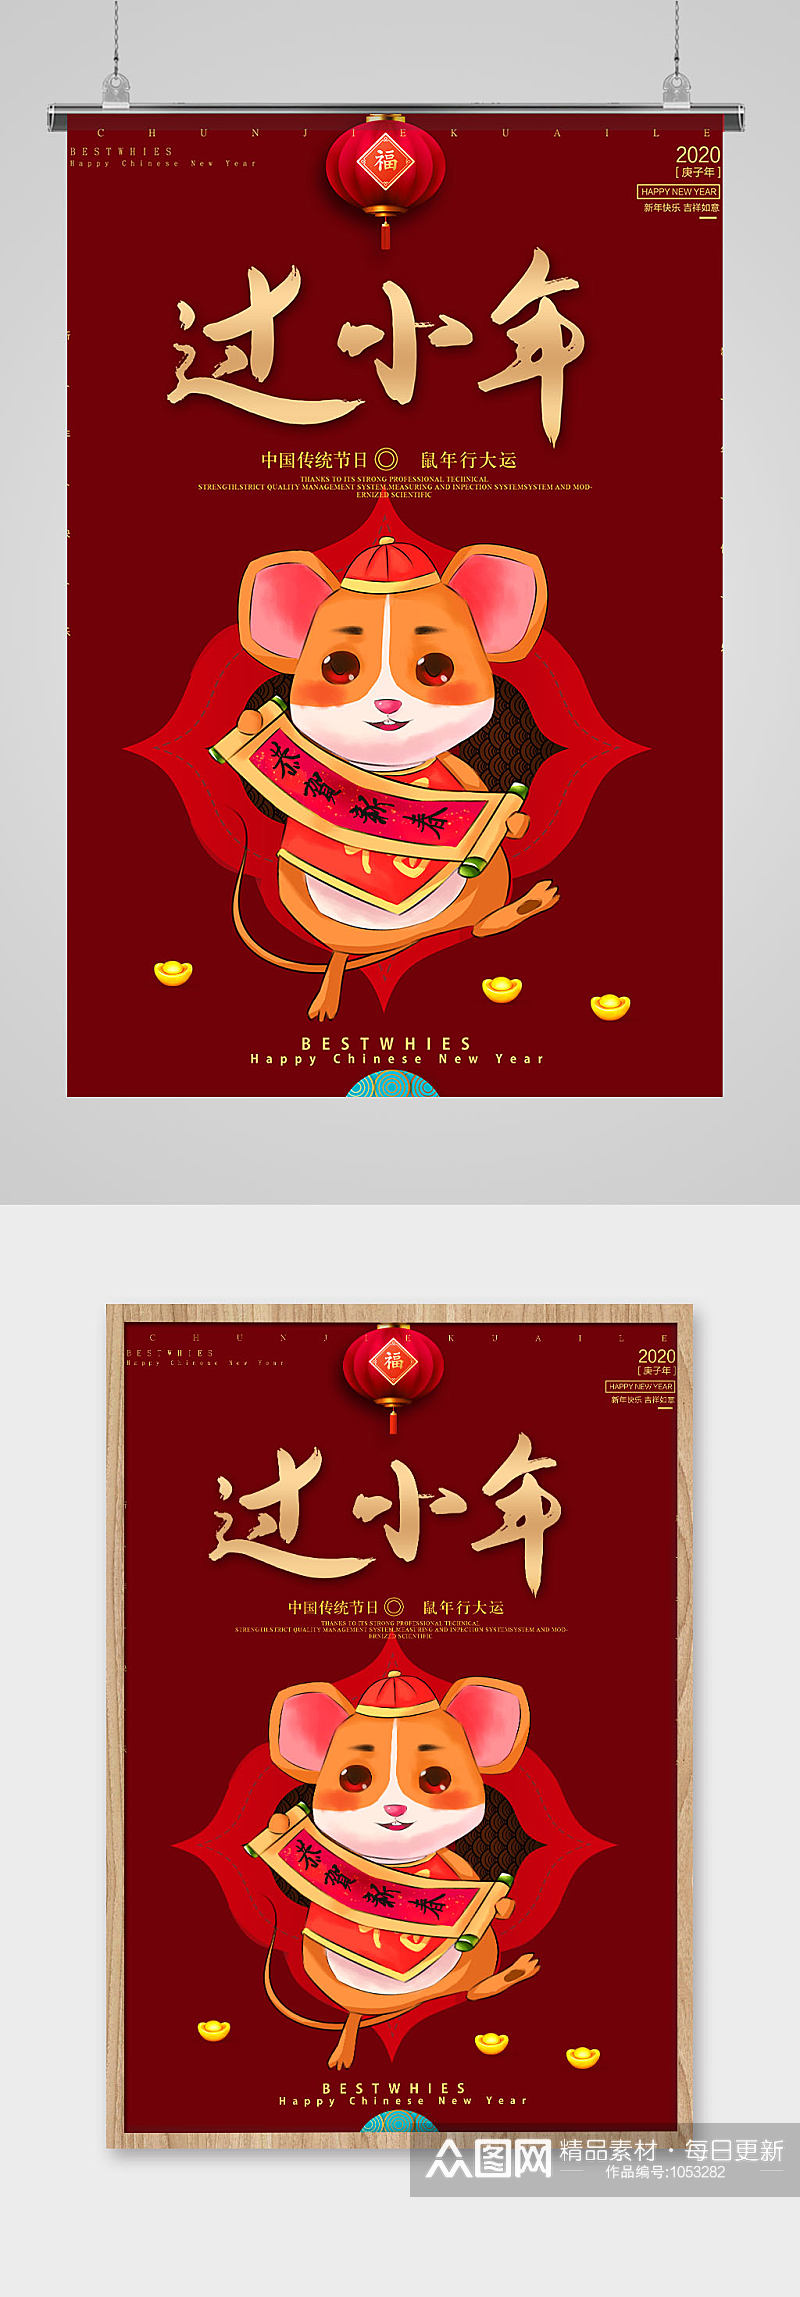 暗红色系列老鼠插画中国风喜庆小年节日海报素材